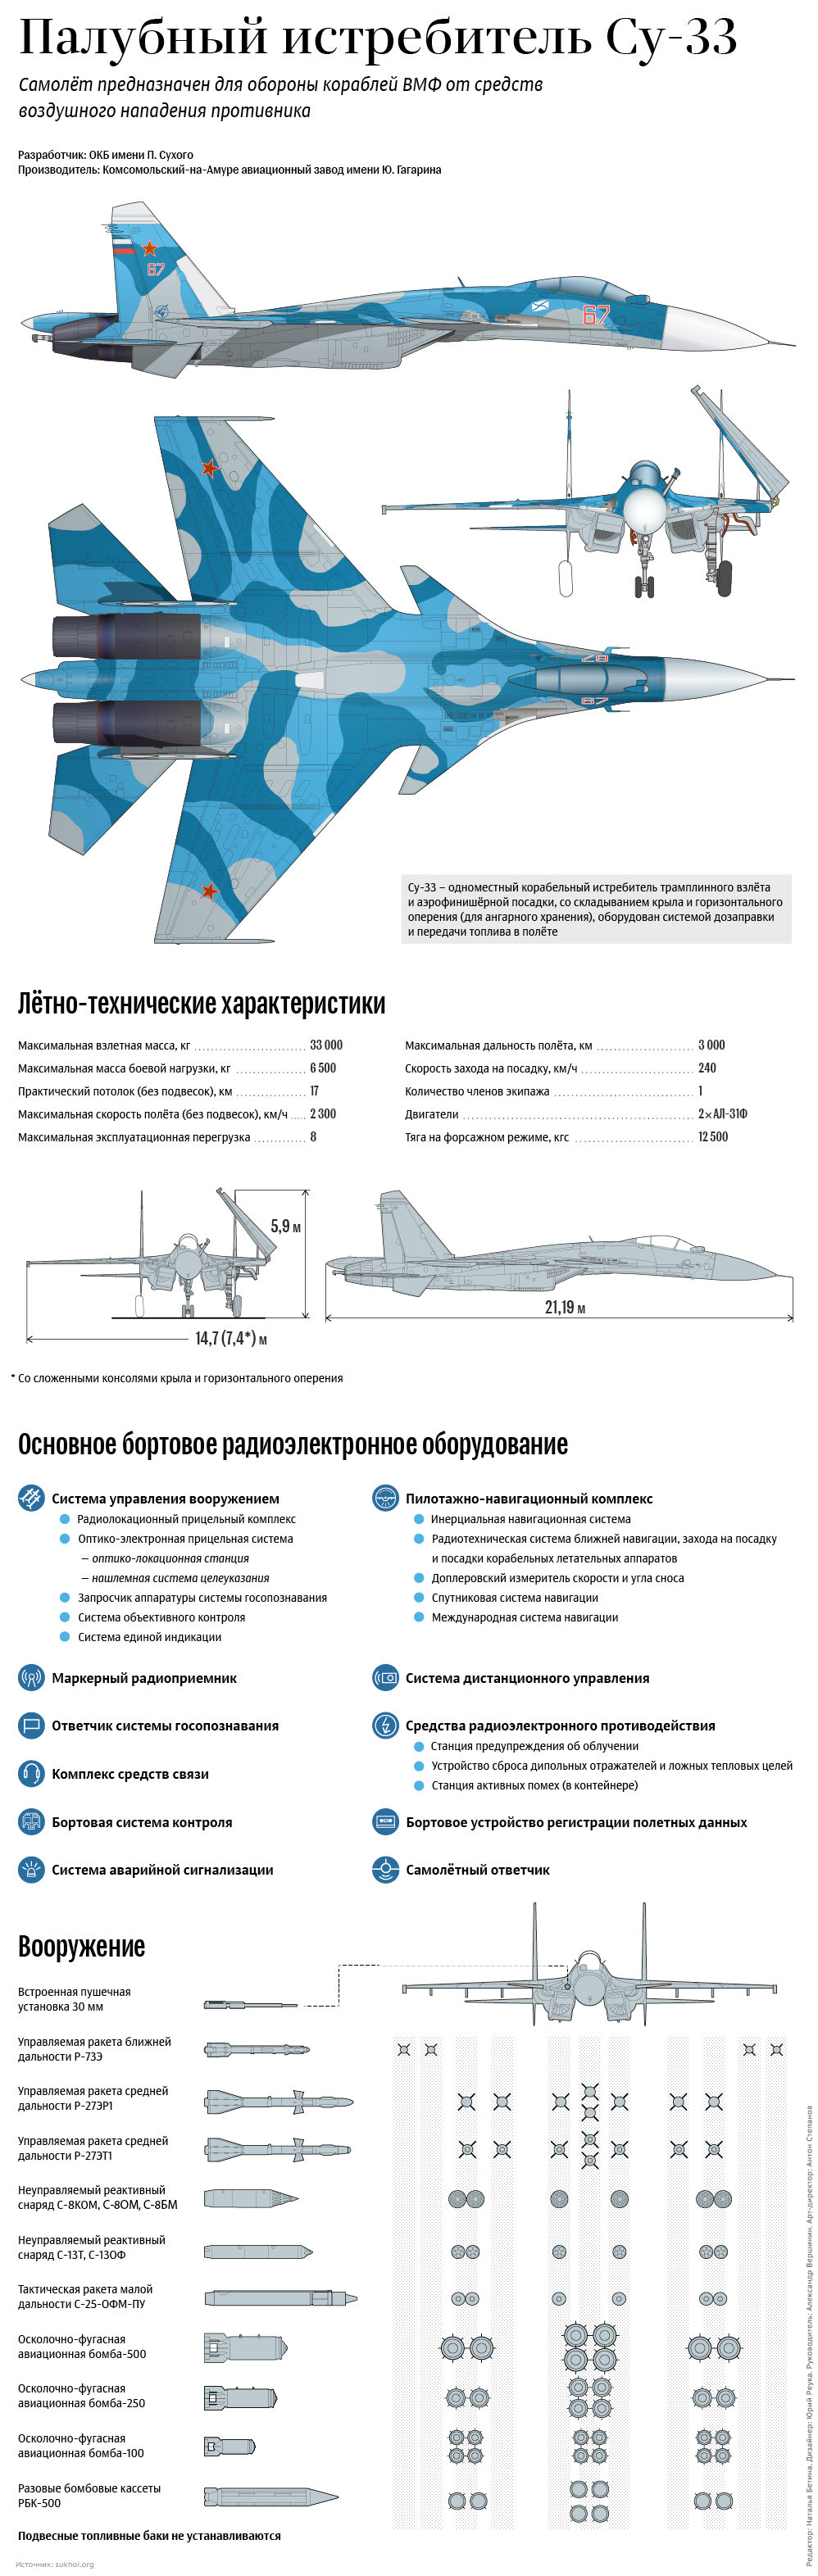 Палубный истребитель Су-33